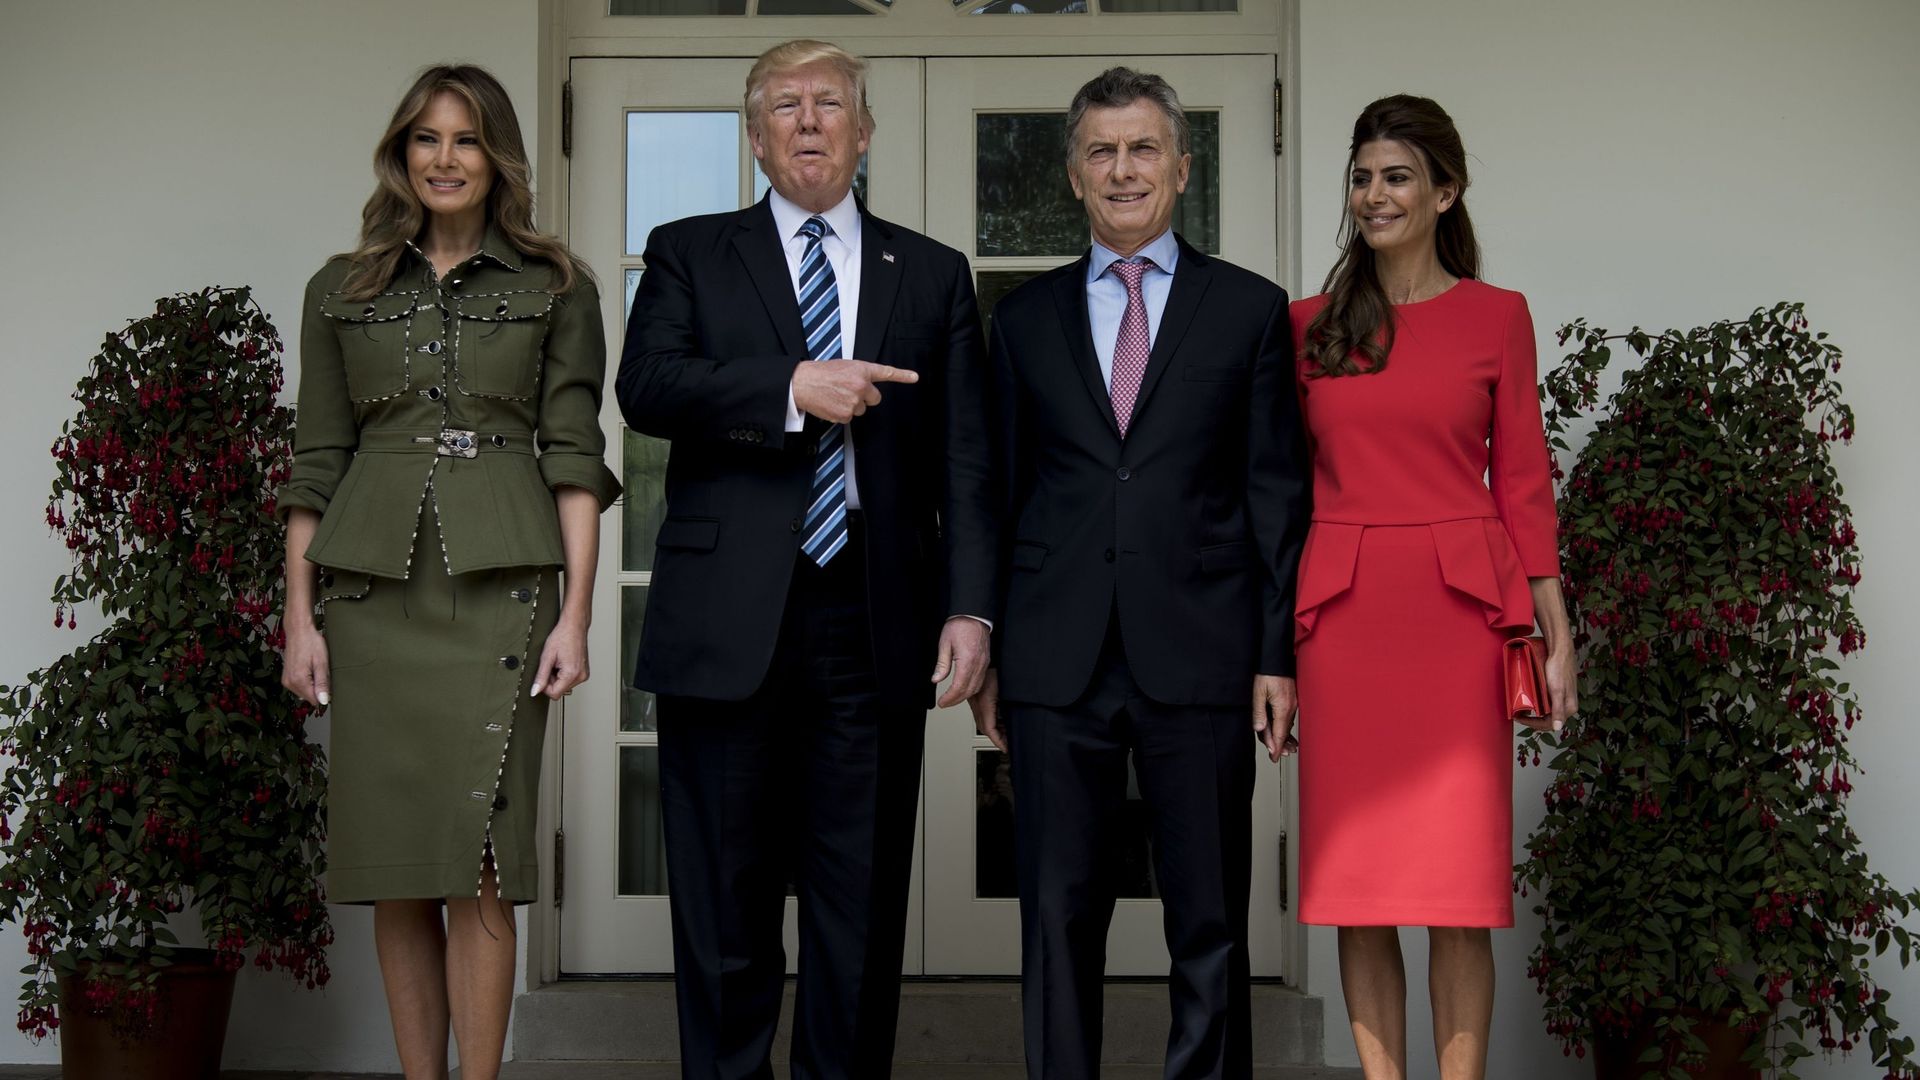 Le président des Etats-Unis Donald Trump a insisté jeudi sur la longue amitié qui le lie au président argentin de centre droit Mauricio Macri qu'il a reçu à la Maison Blanche.